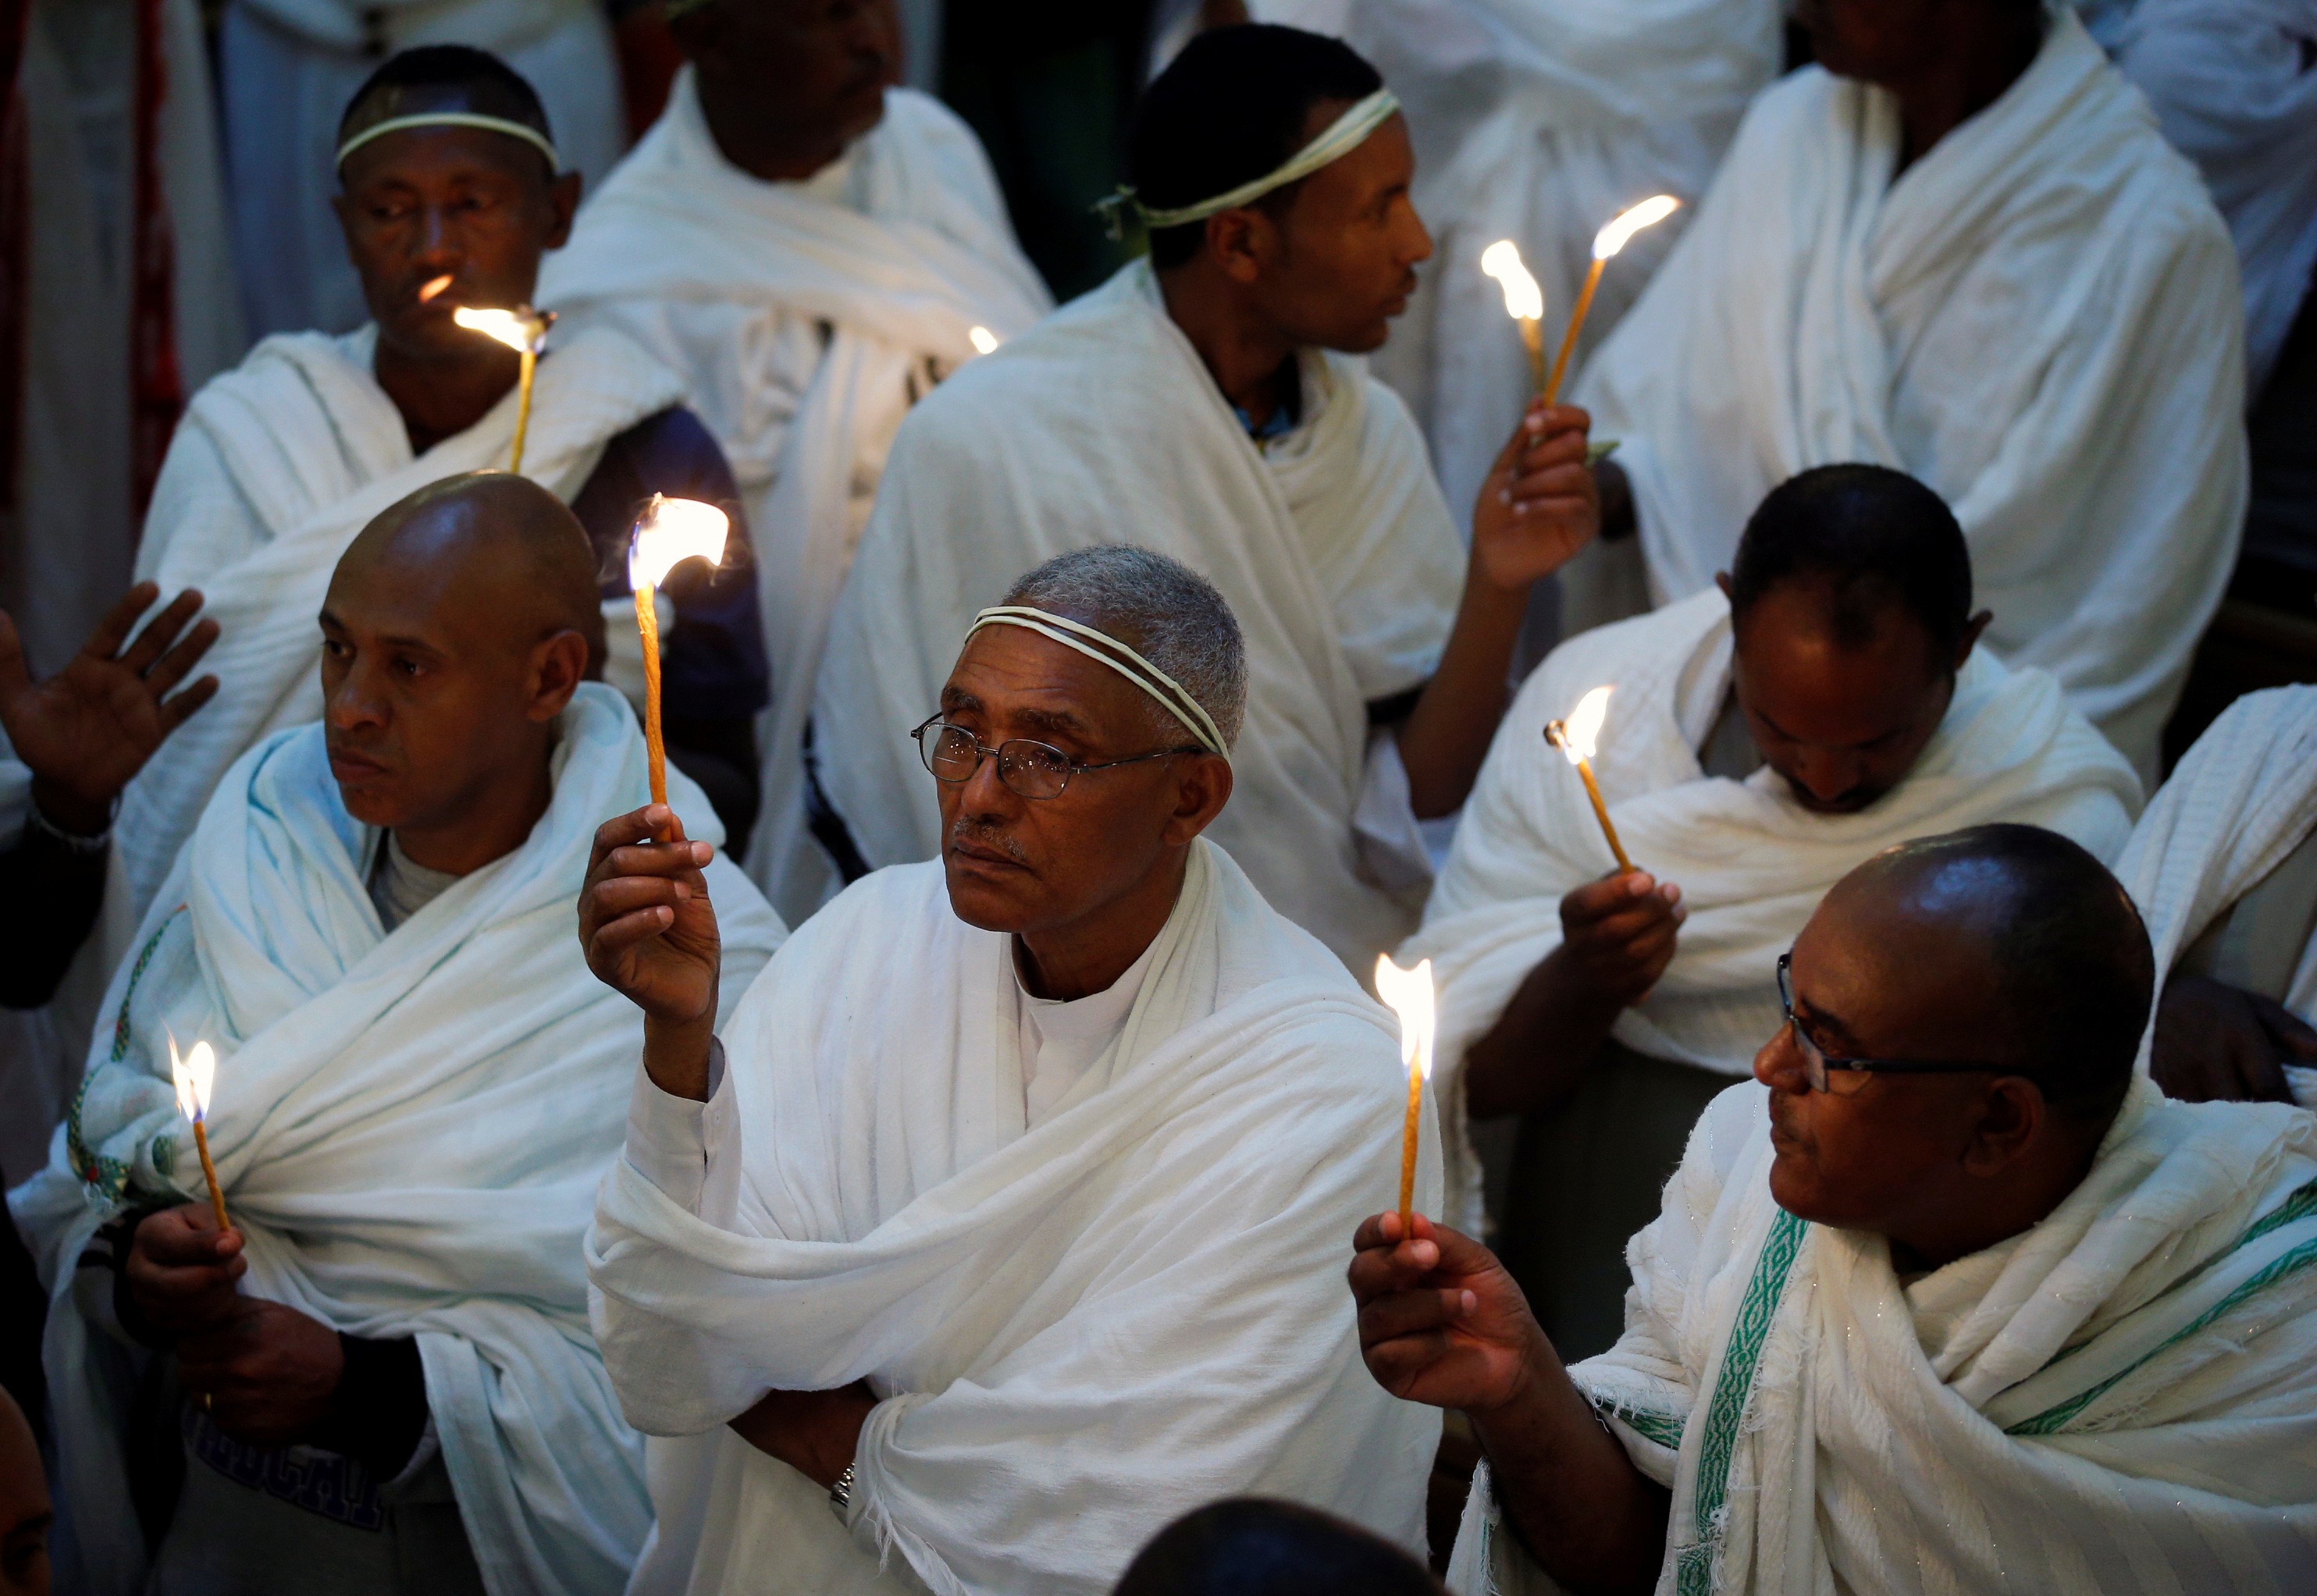  مسيحيون أرثوذكس بالكنيسة الأرثوذكسية المقدسة بأديس أبابا (رويترز)